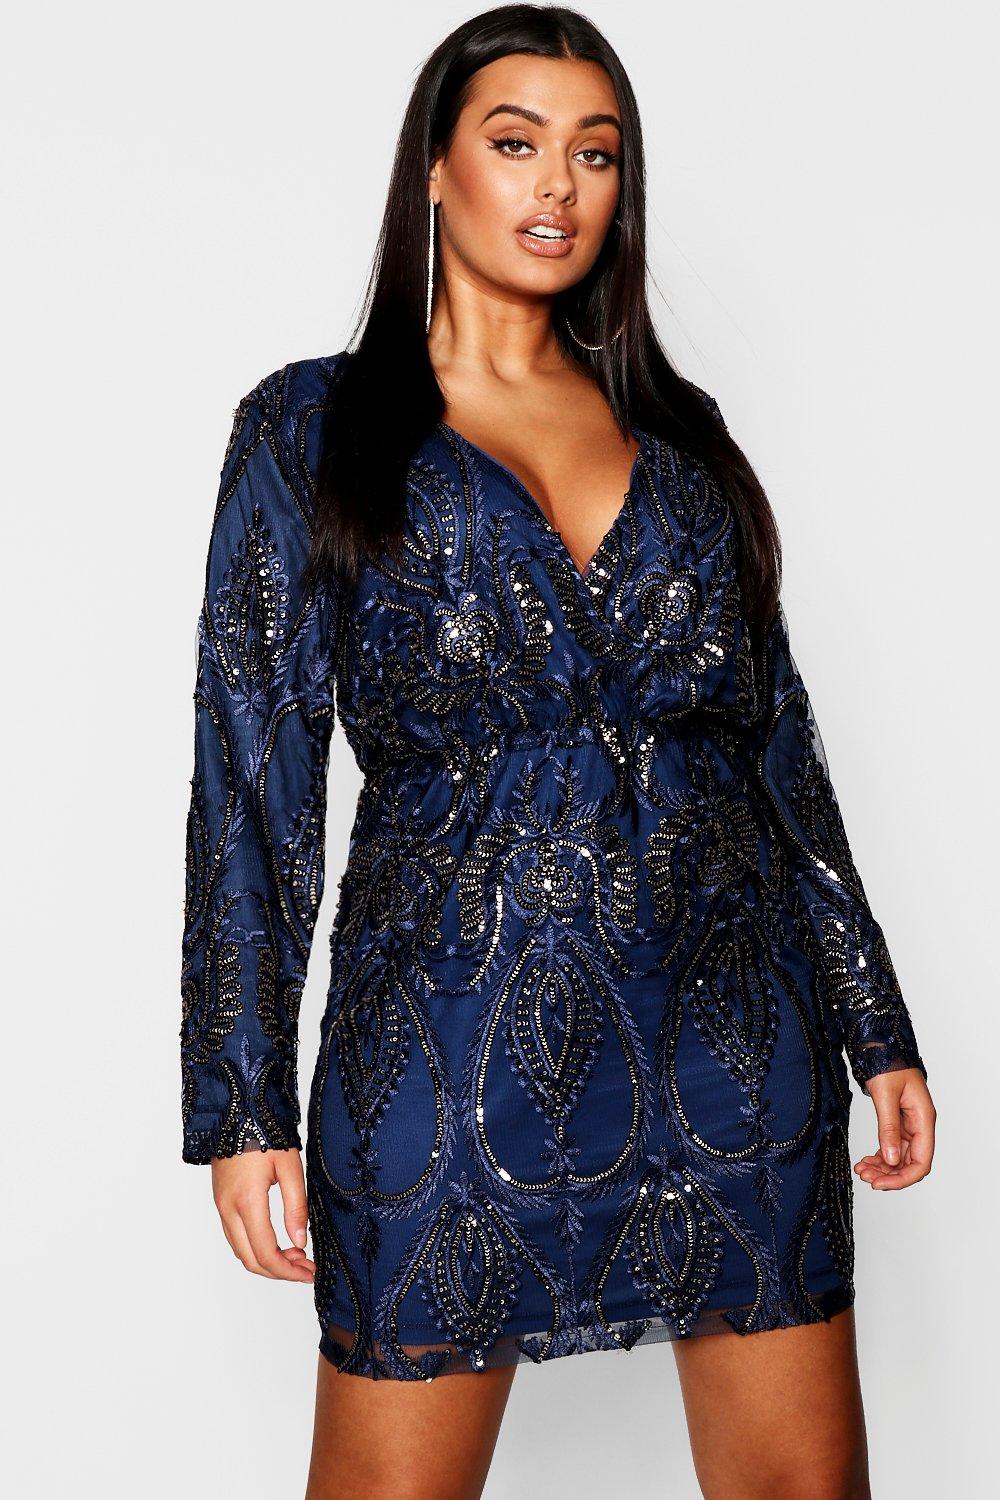 navy blue sequin dress